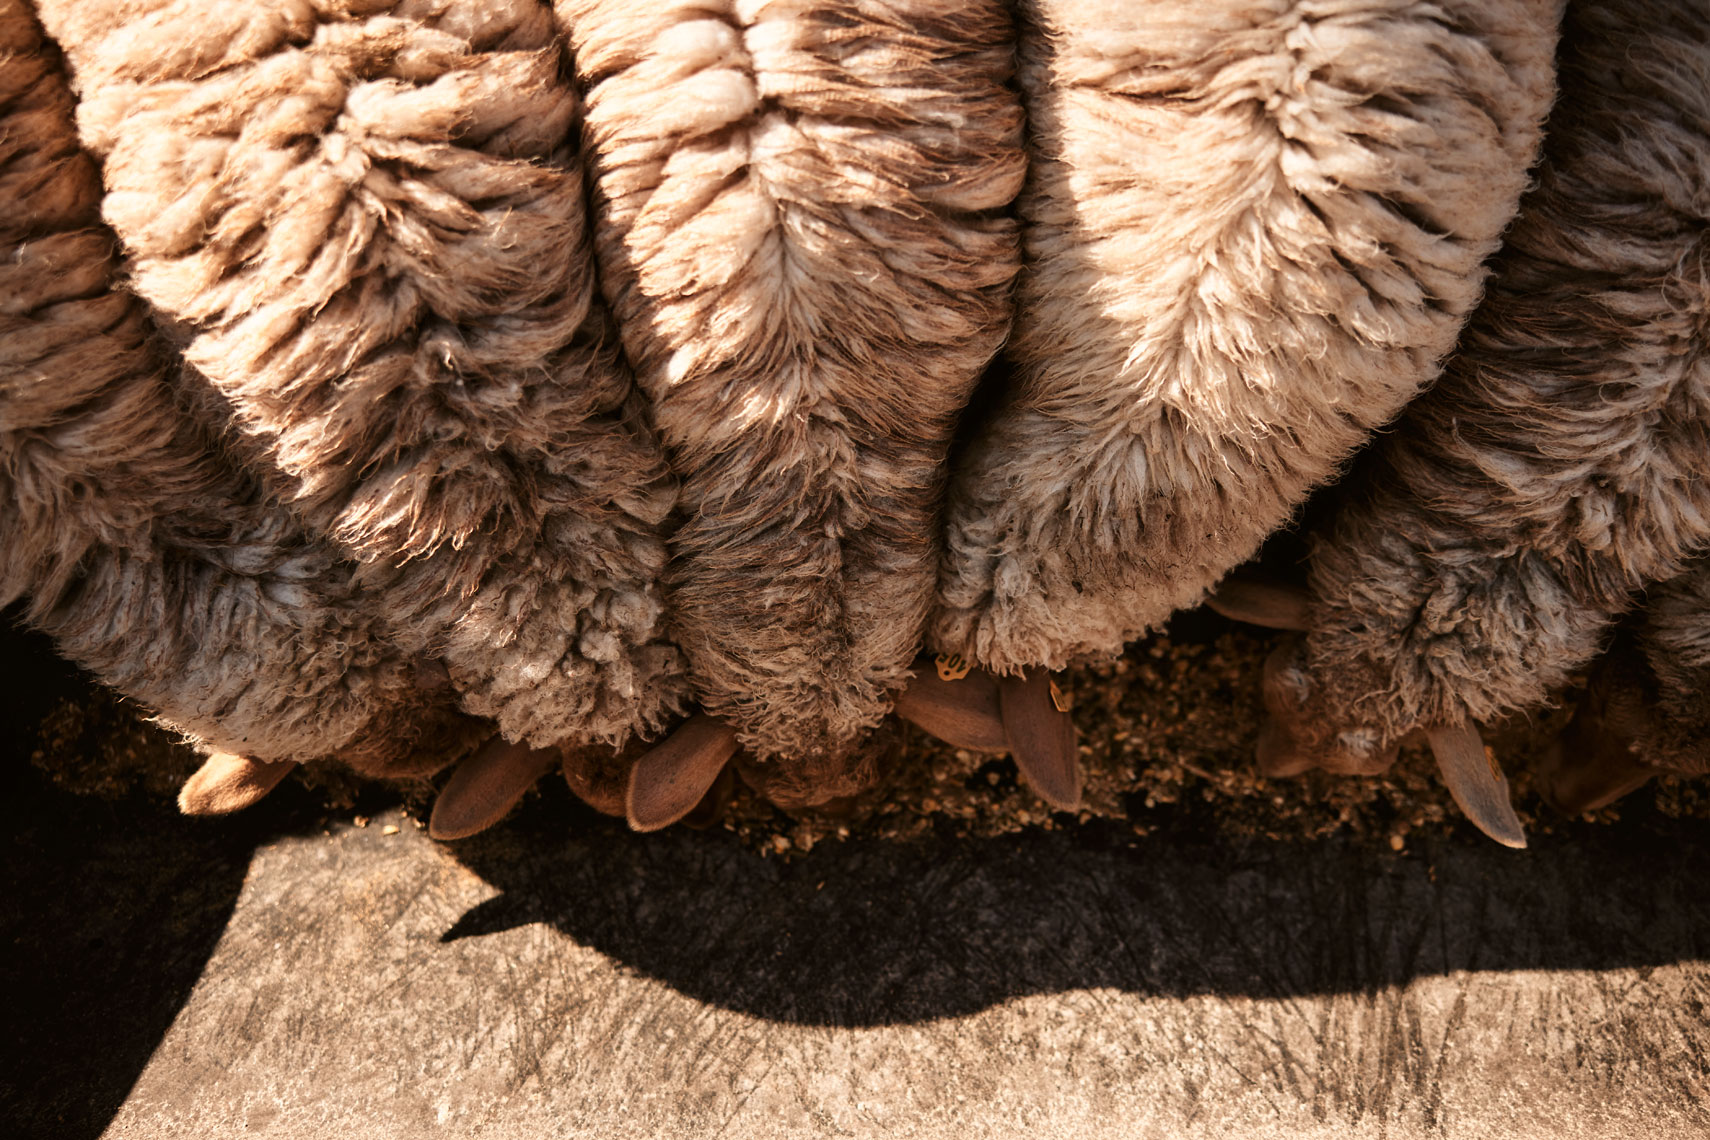 10-SHEEP-Sheep-0343